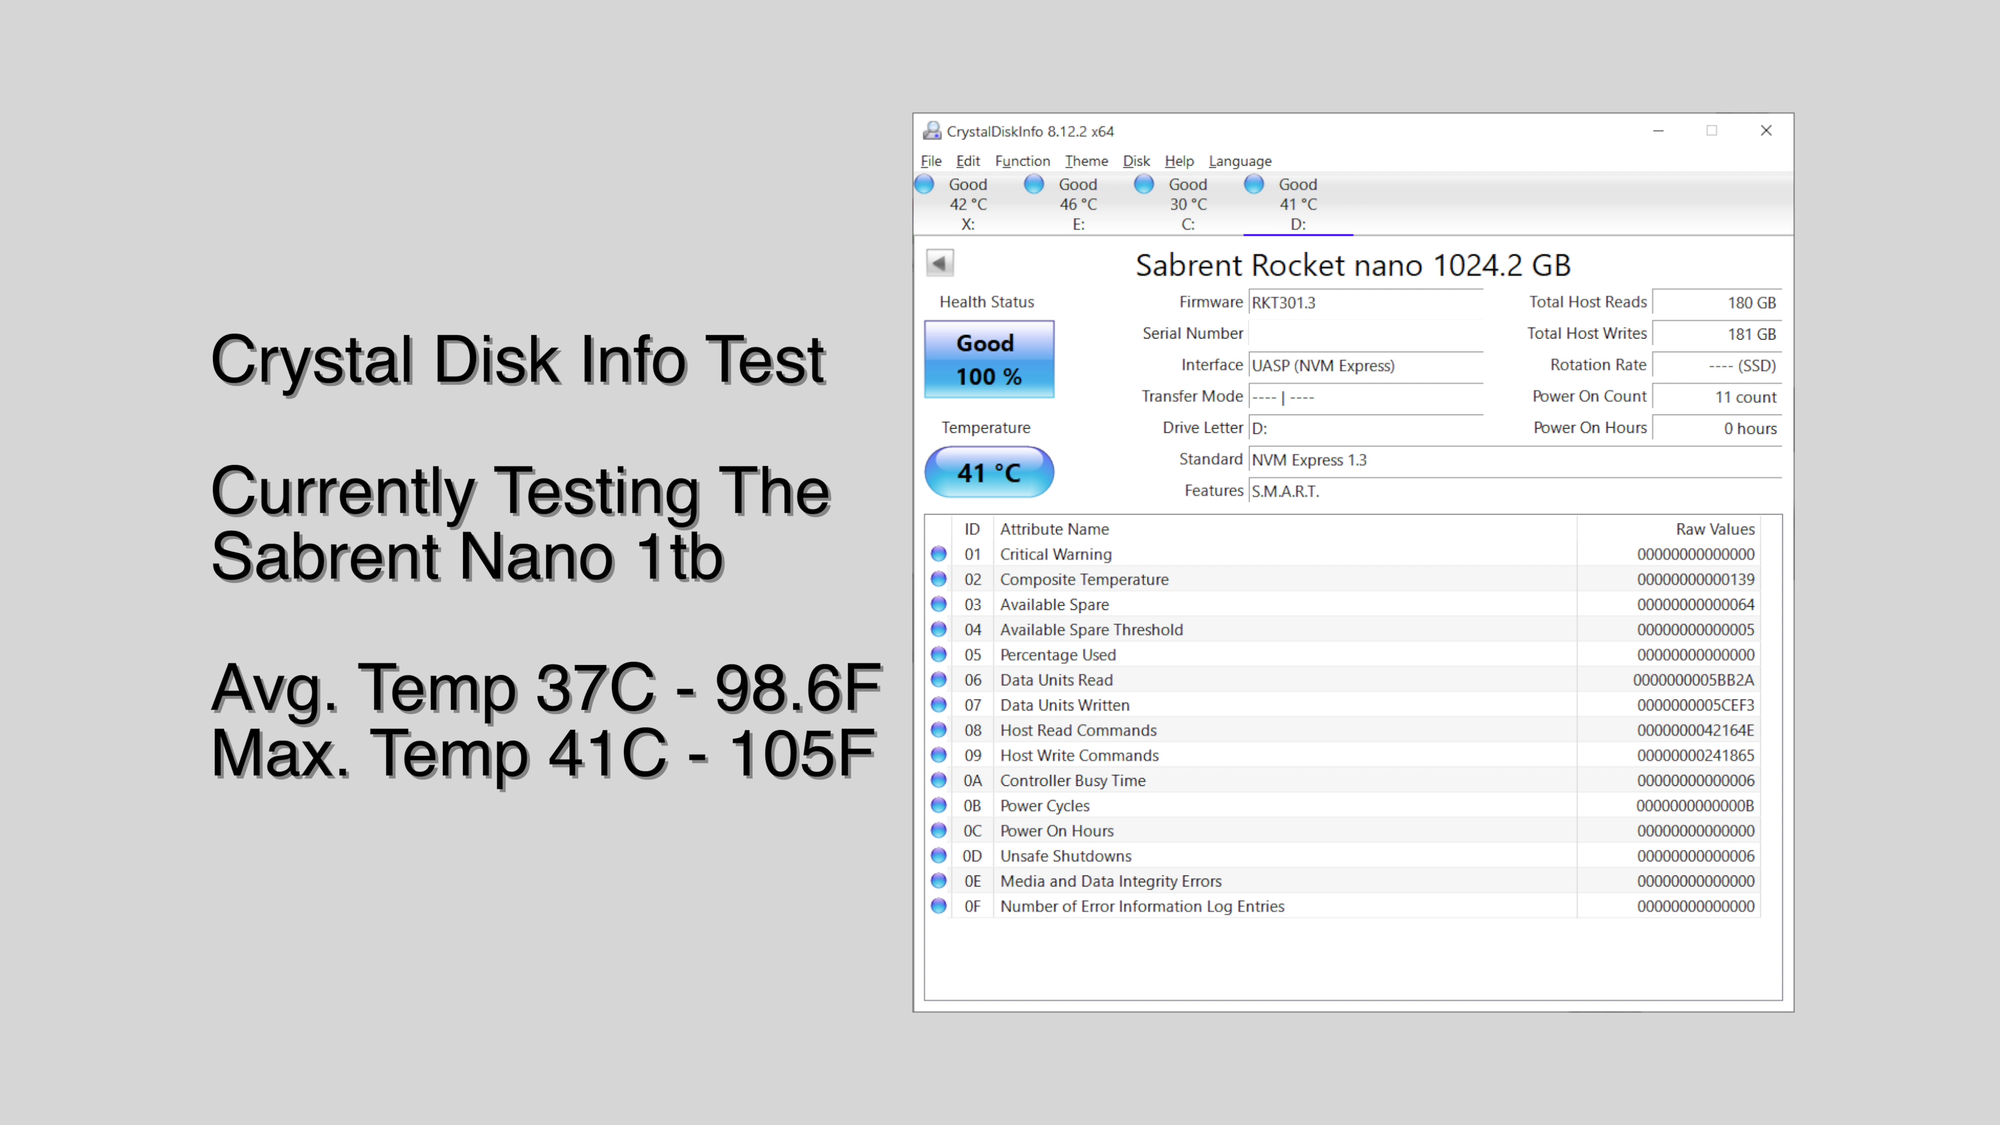 Rocket Nano Rugged SSD - Sabrent